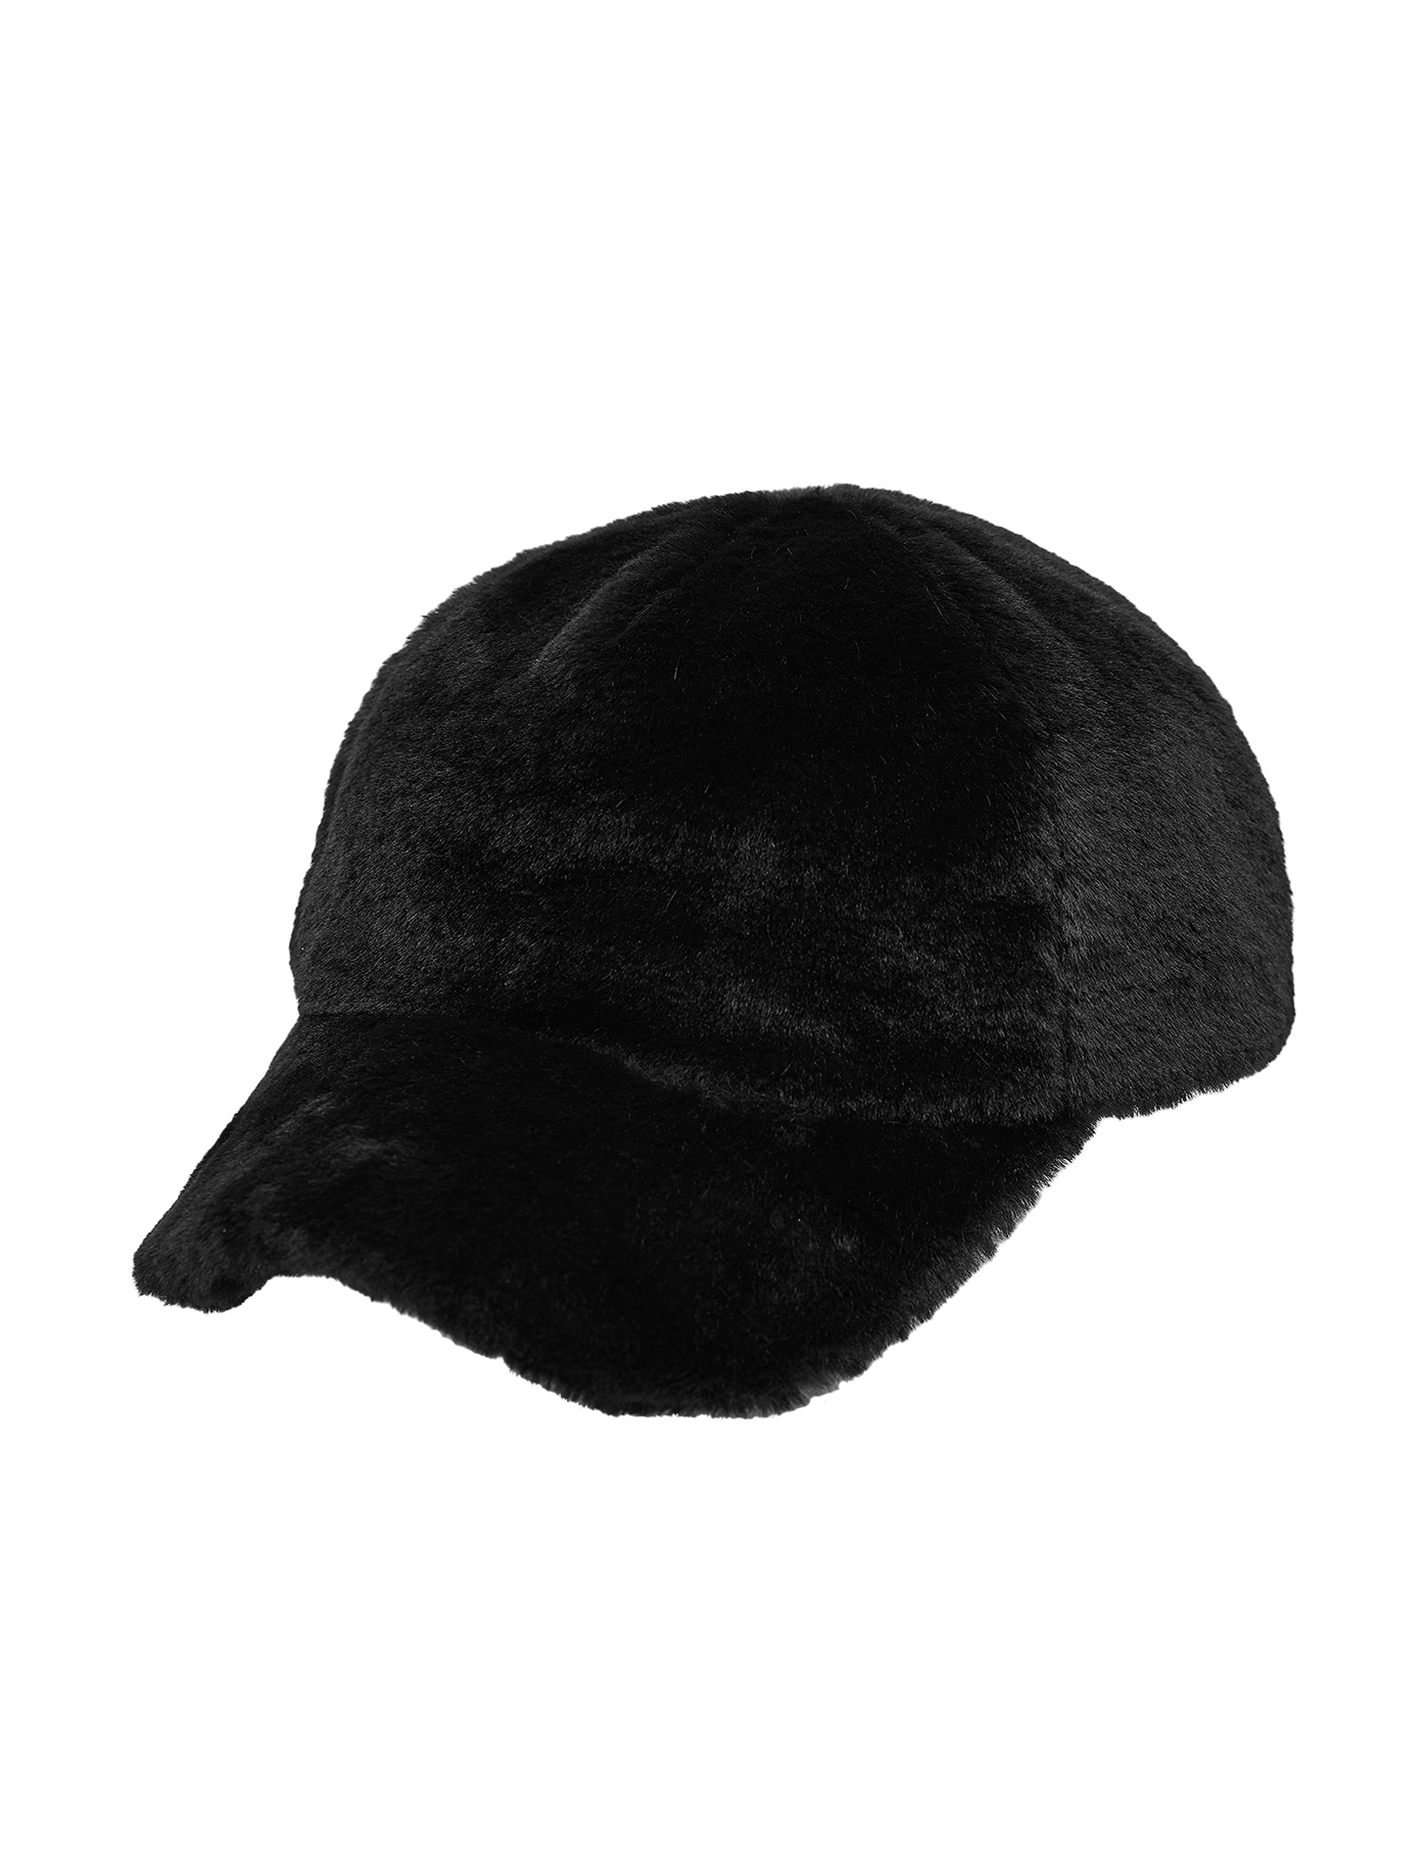 GODASHIN  HAT ( BLACK )